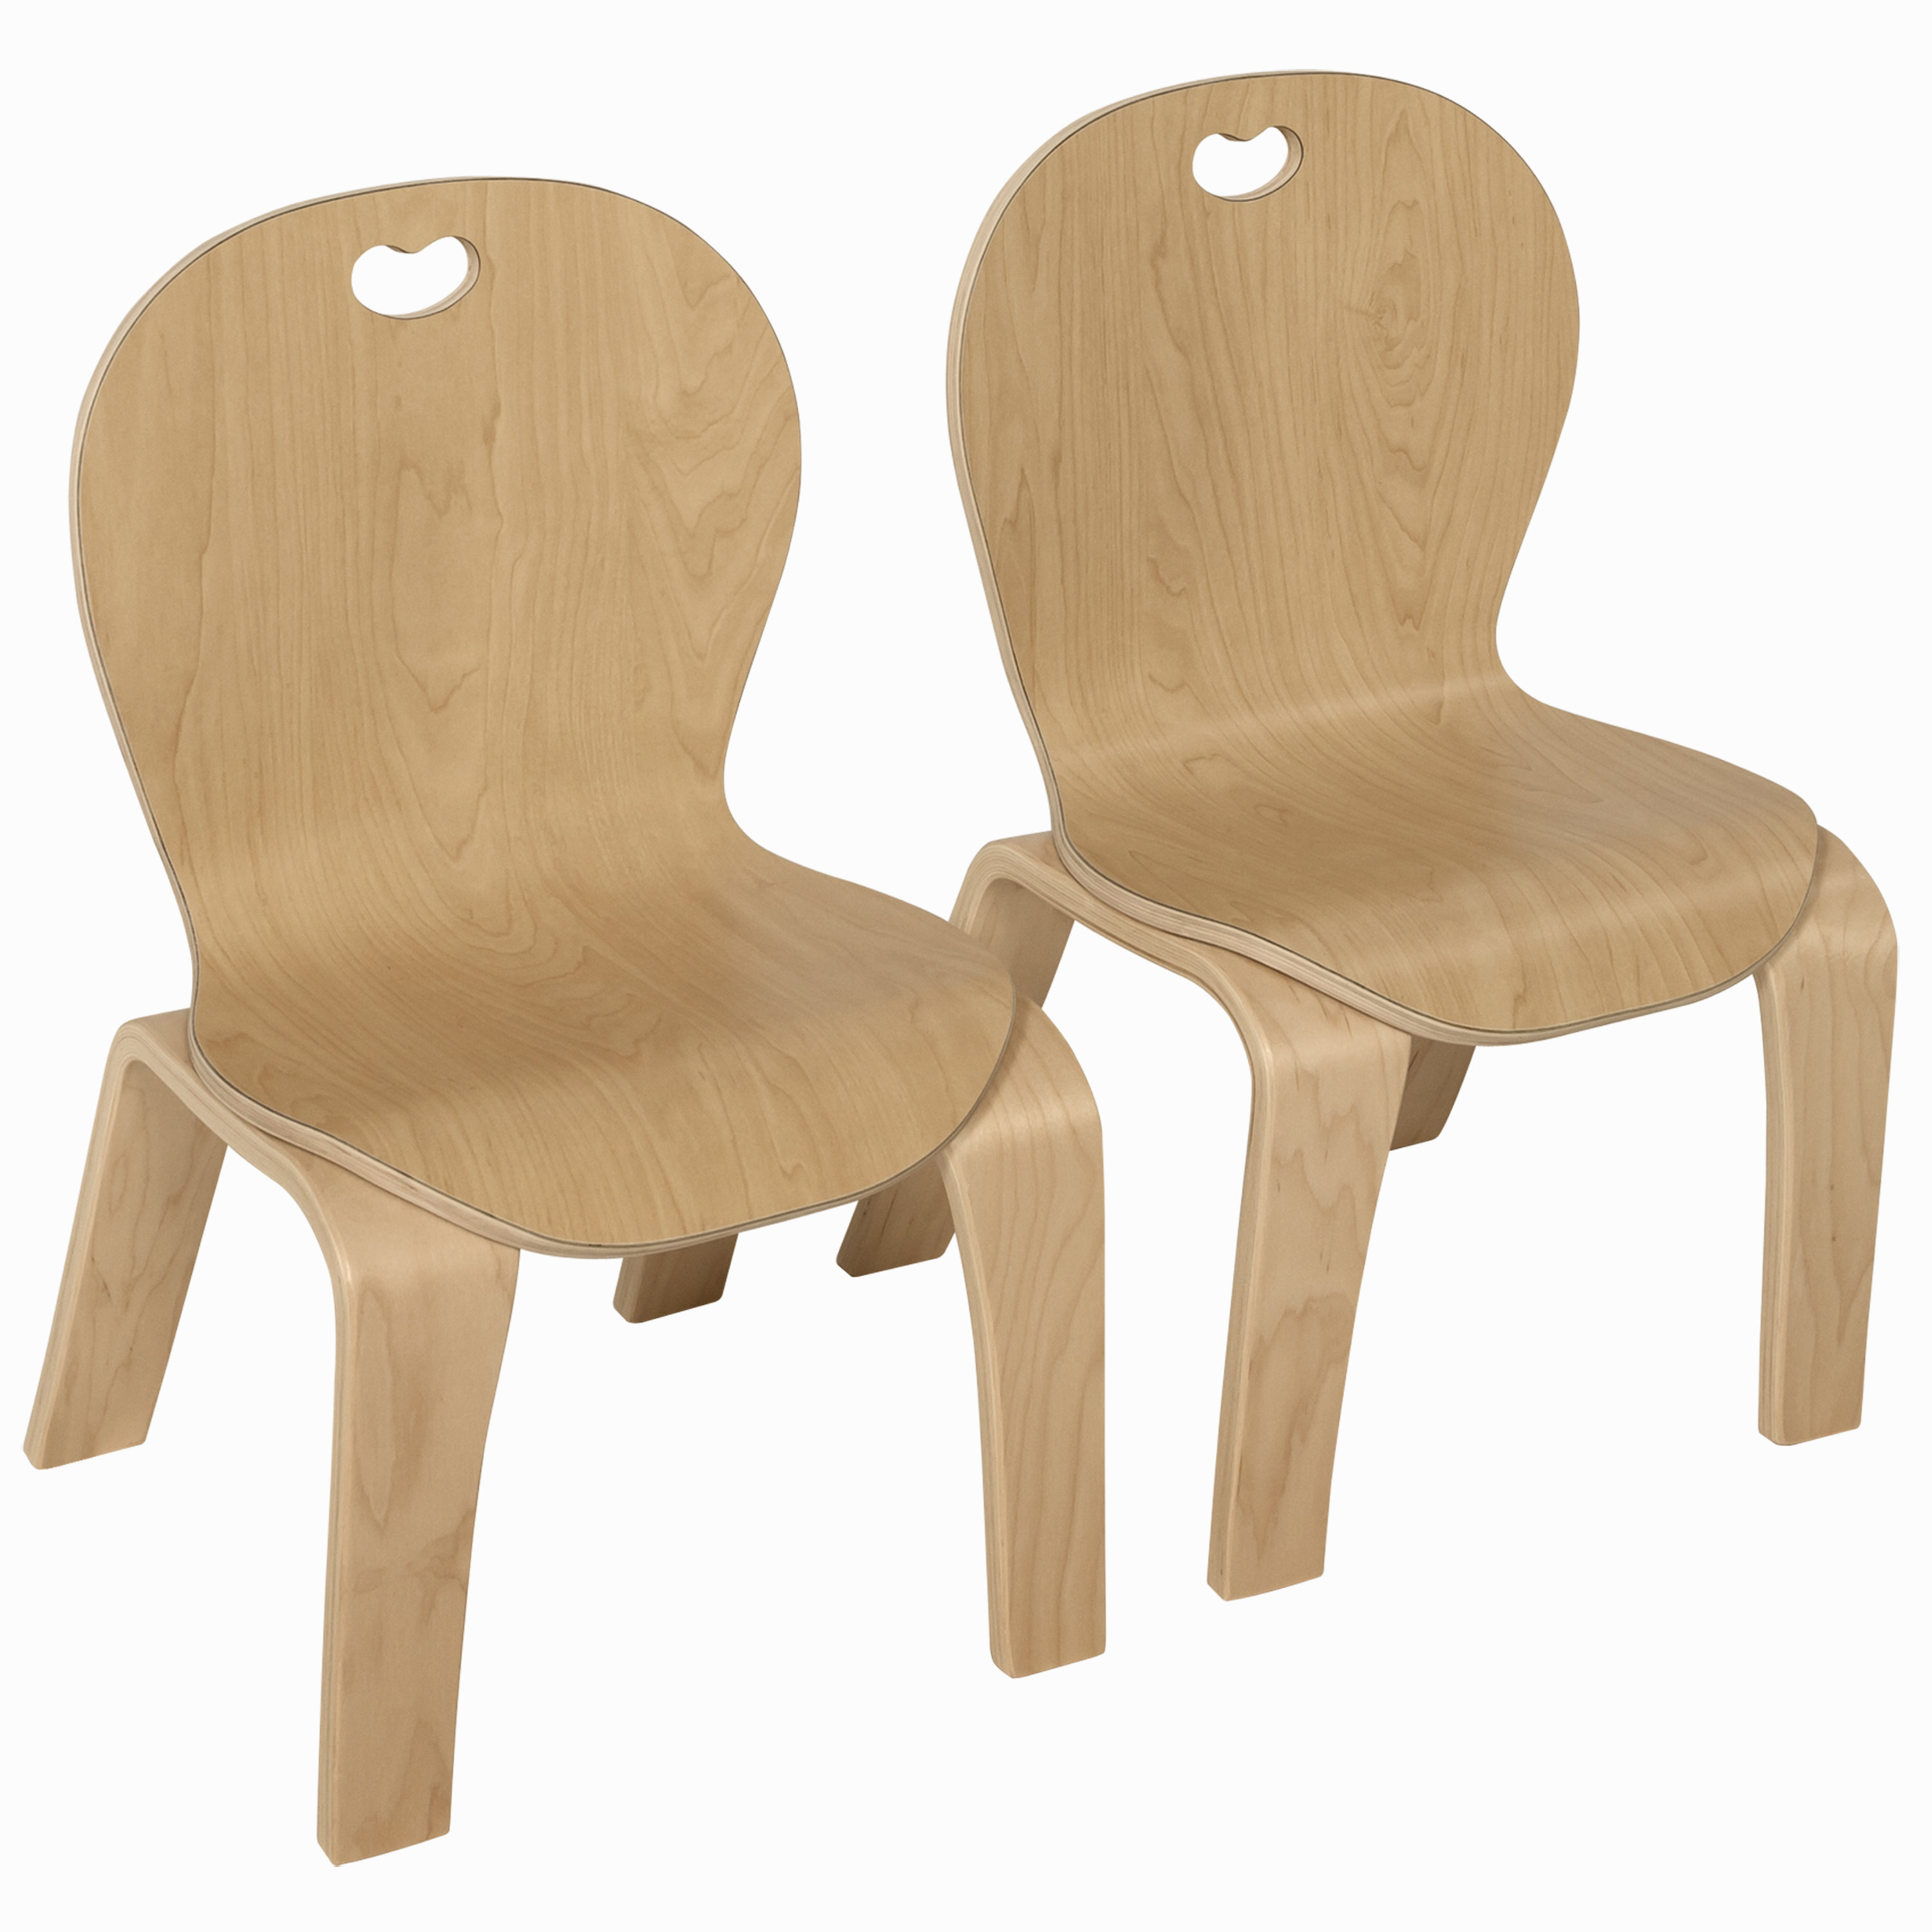 stackable preschool chairs